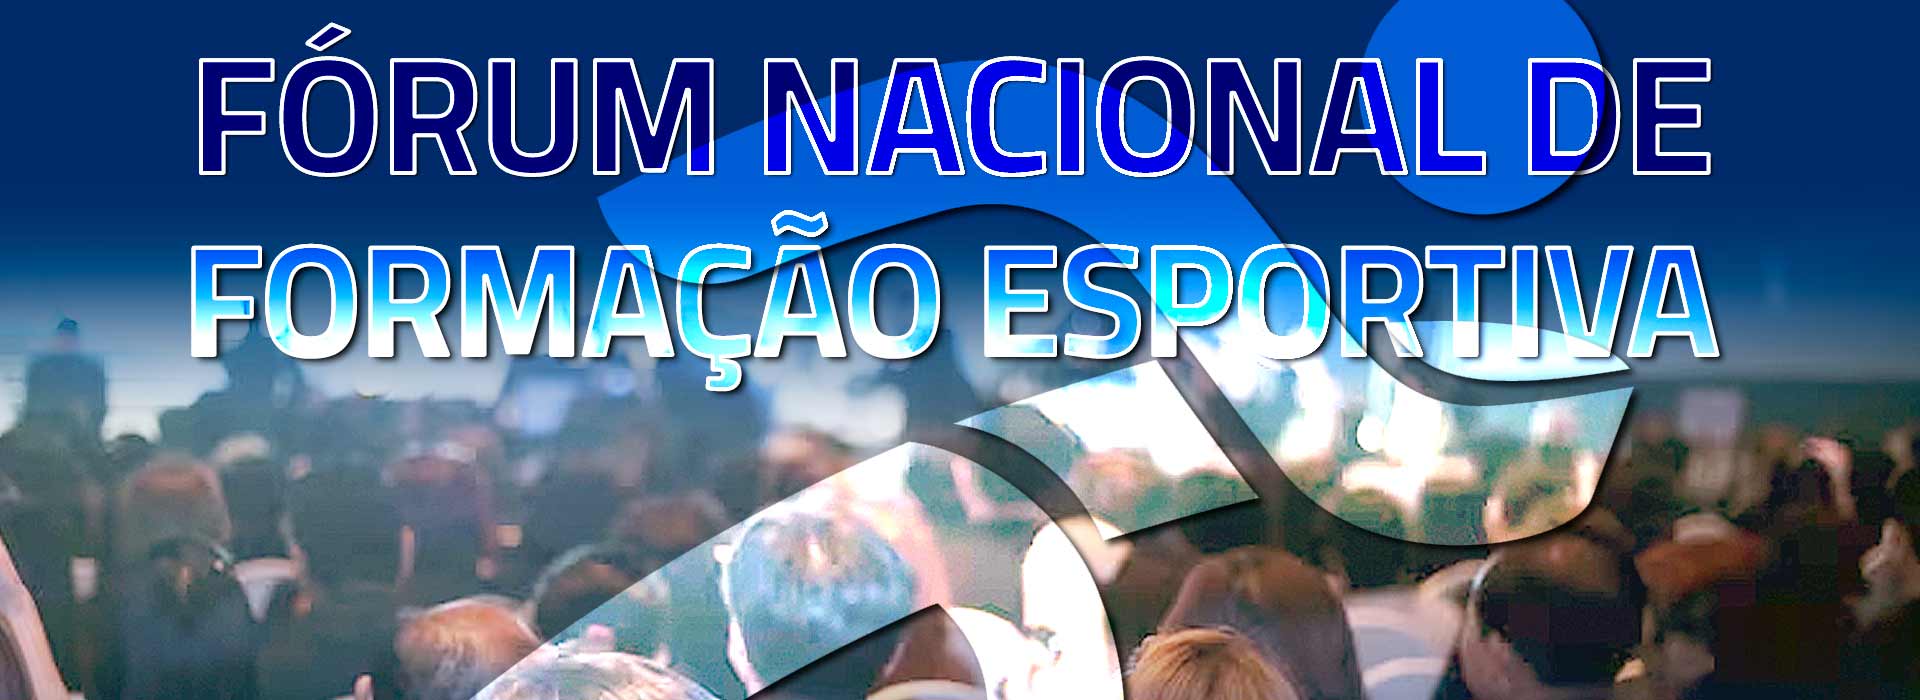 Garanta a participação do seu Clube no Fórum Nacional de Formação Esportiva: Inscreva-se! 